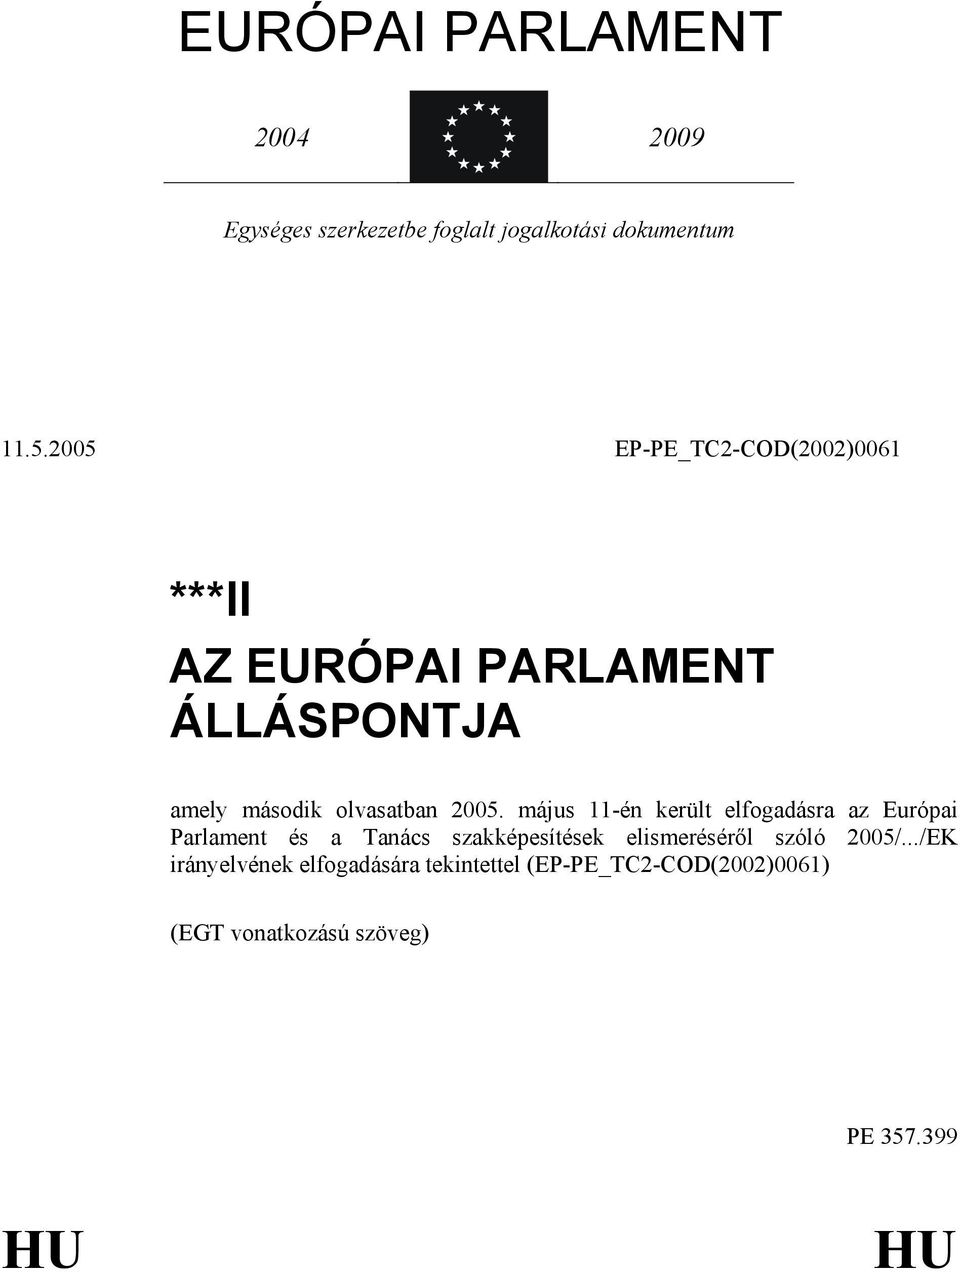 május 11-én került elfogadásra az Európai Parlament és a Tanács szakképesítések elismerésérıl szóló